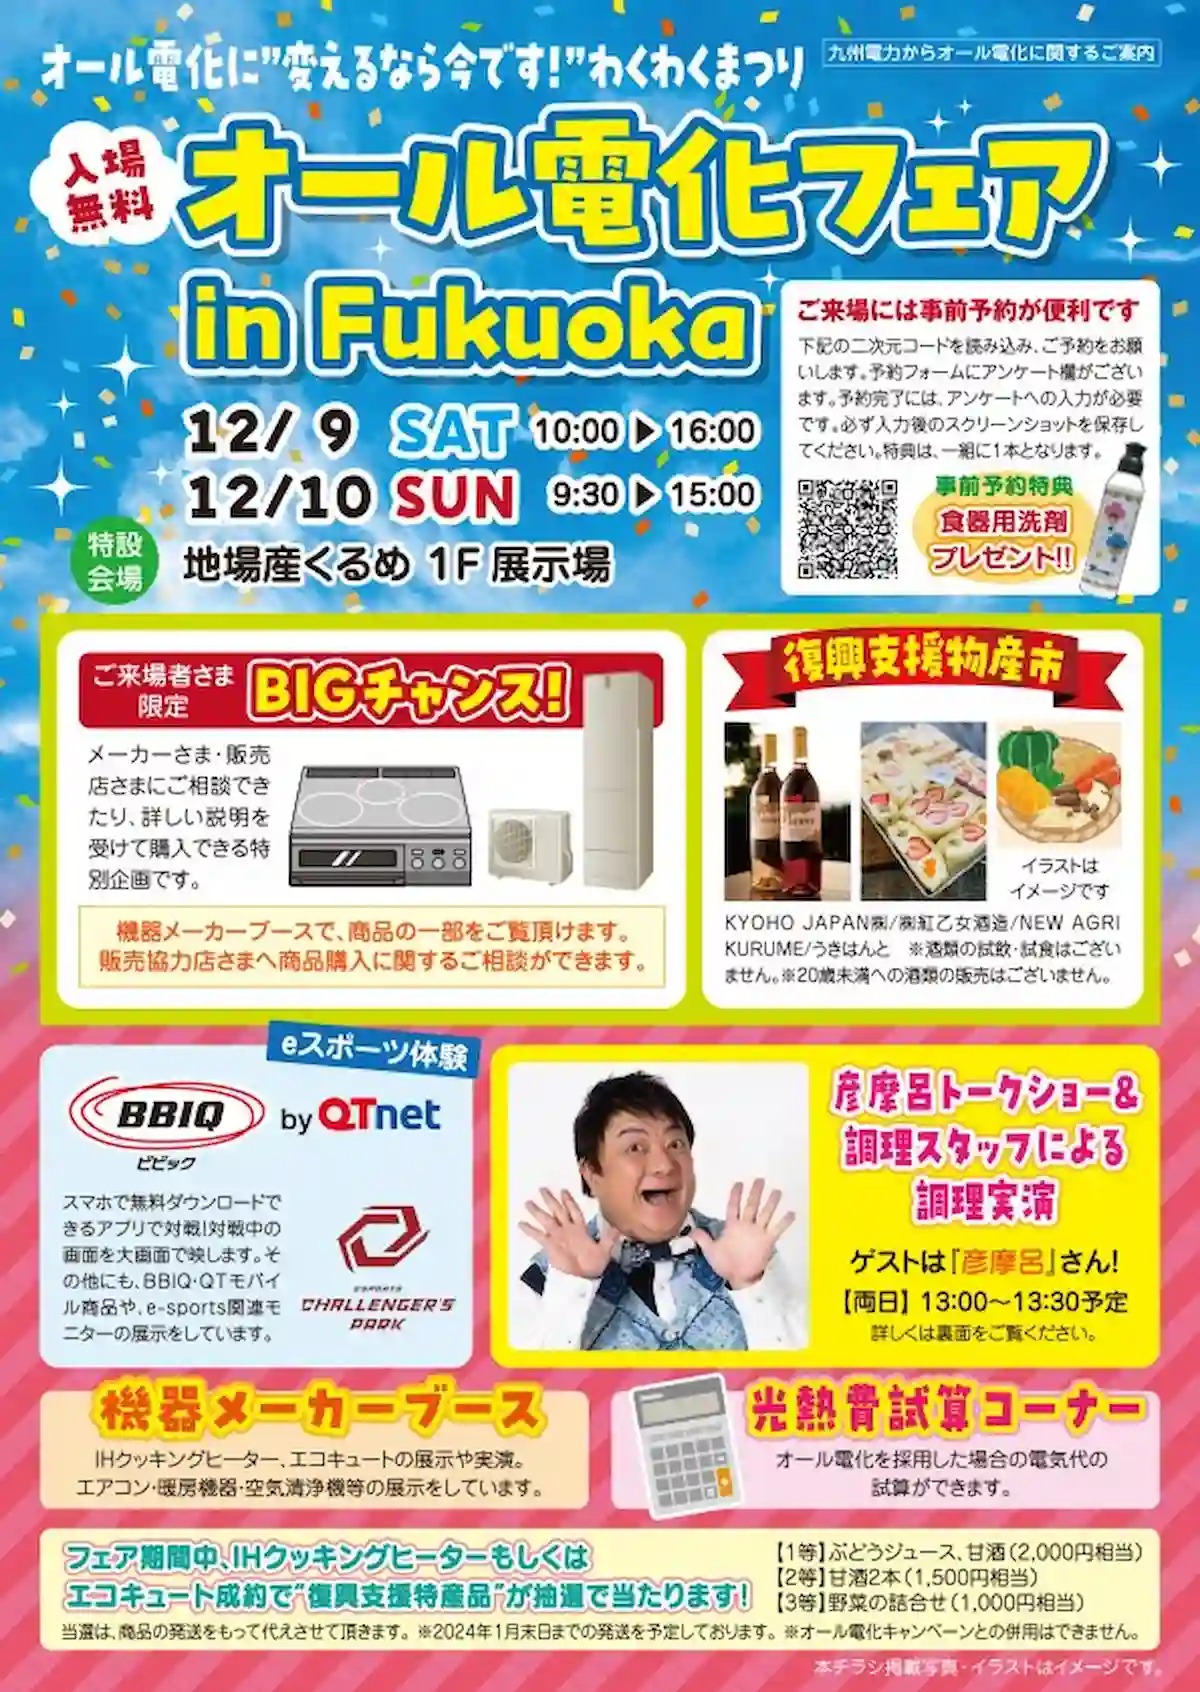 久留米で「オール電化フェア in Fukuoka」12月9日、10日開催　ゲストは彦摩呂！素敵な景品の特別抽選会も